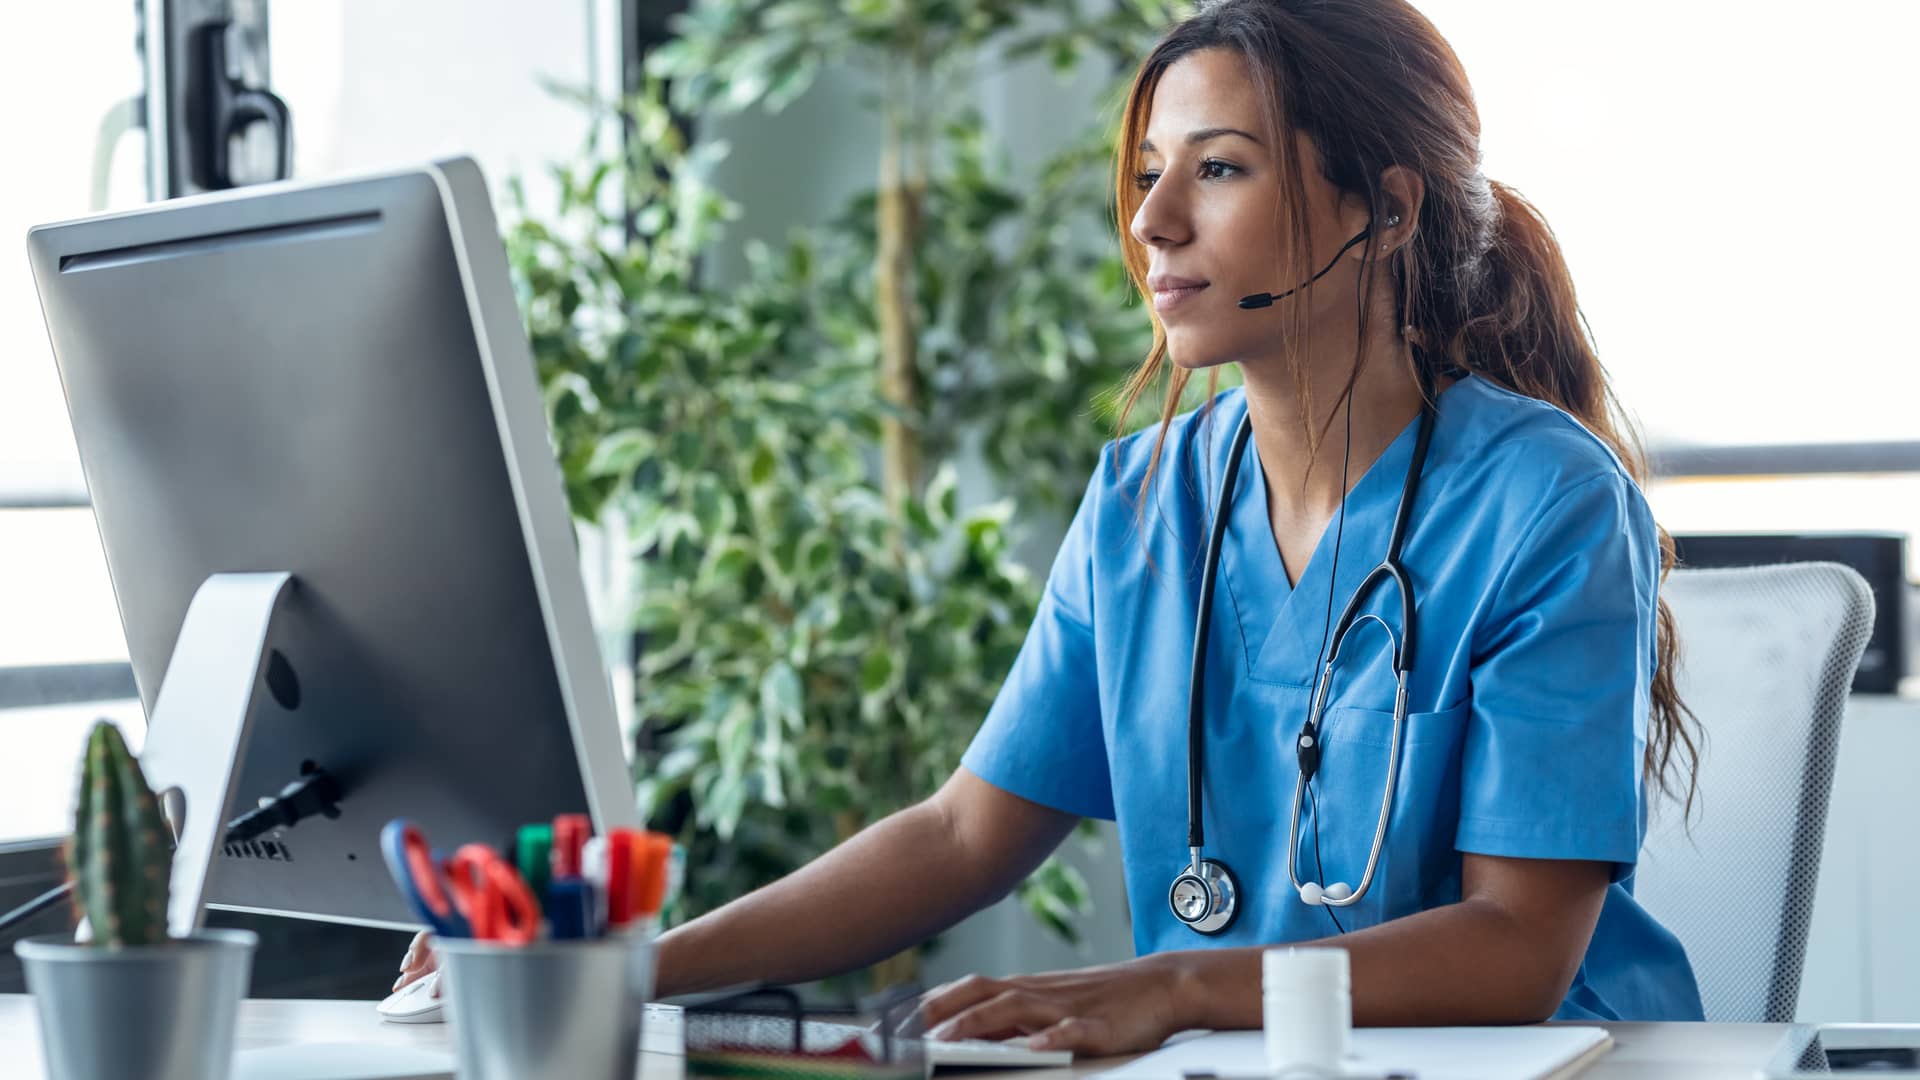 Medica dando atención online a clientes de seguro de salud con servicios digitales contratados